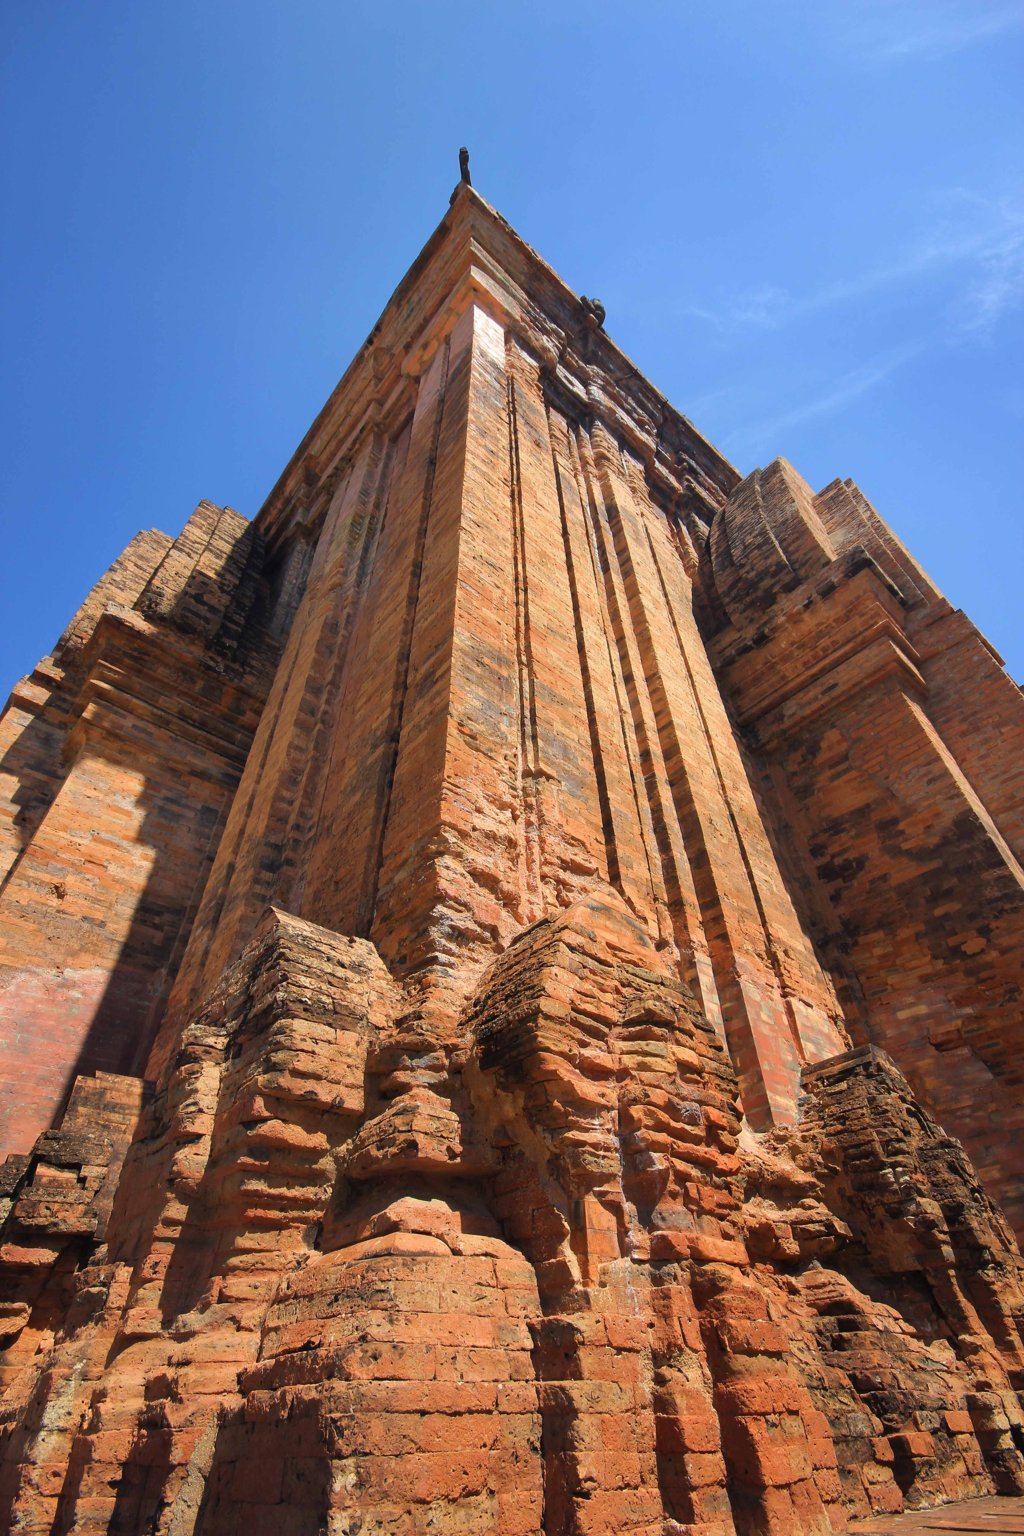 Mặt ngoài của tháp, gạch trang trí hoa văn hình vòm tháp, trông như chiếc tháp nhỏ đặt lên một tháp lớn.